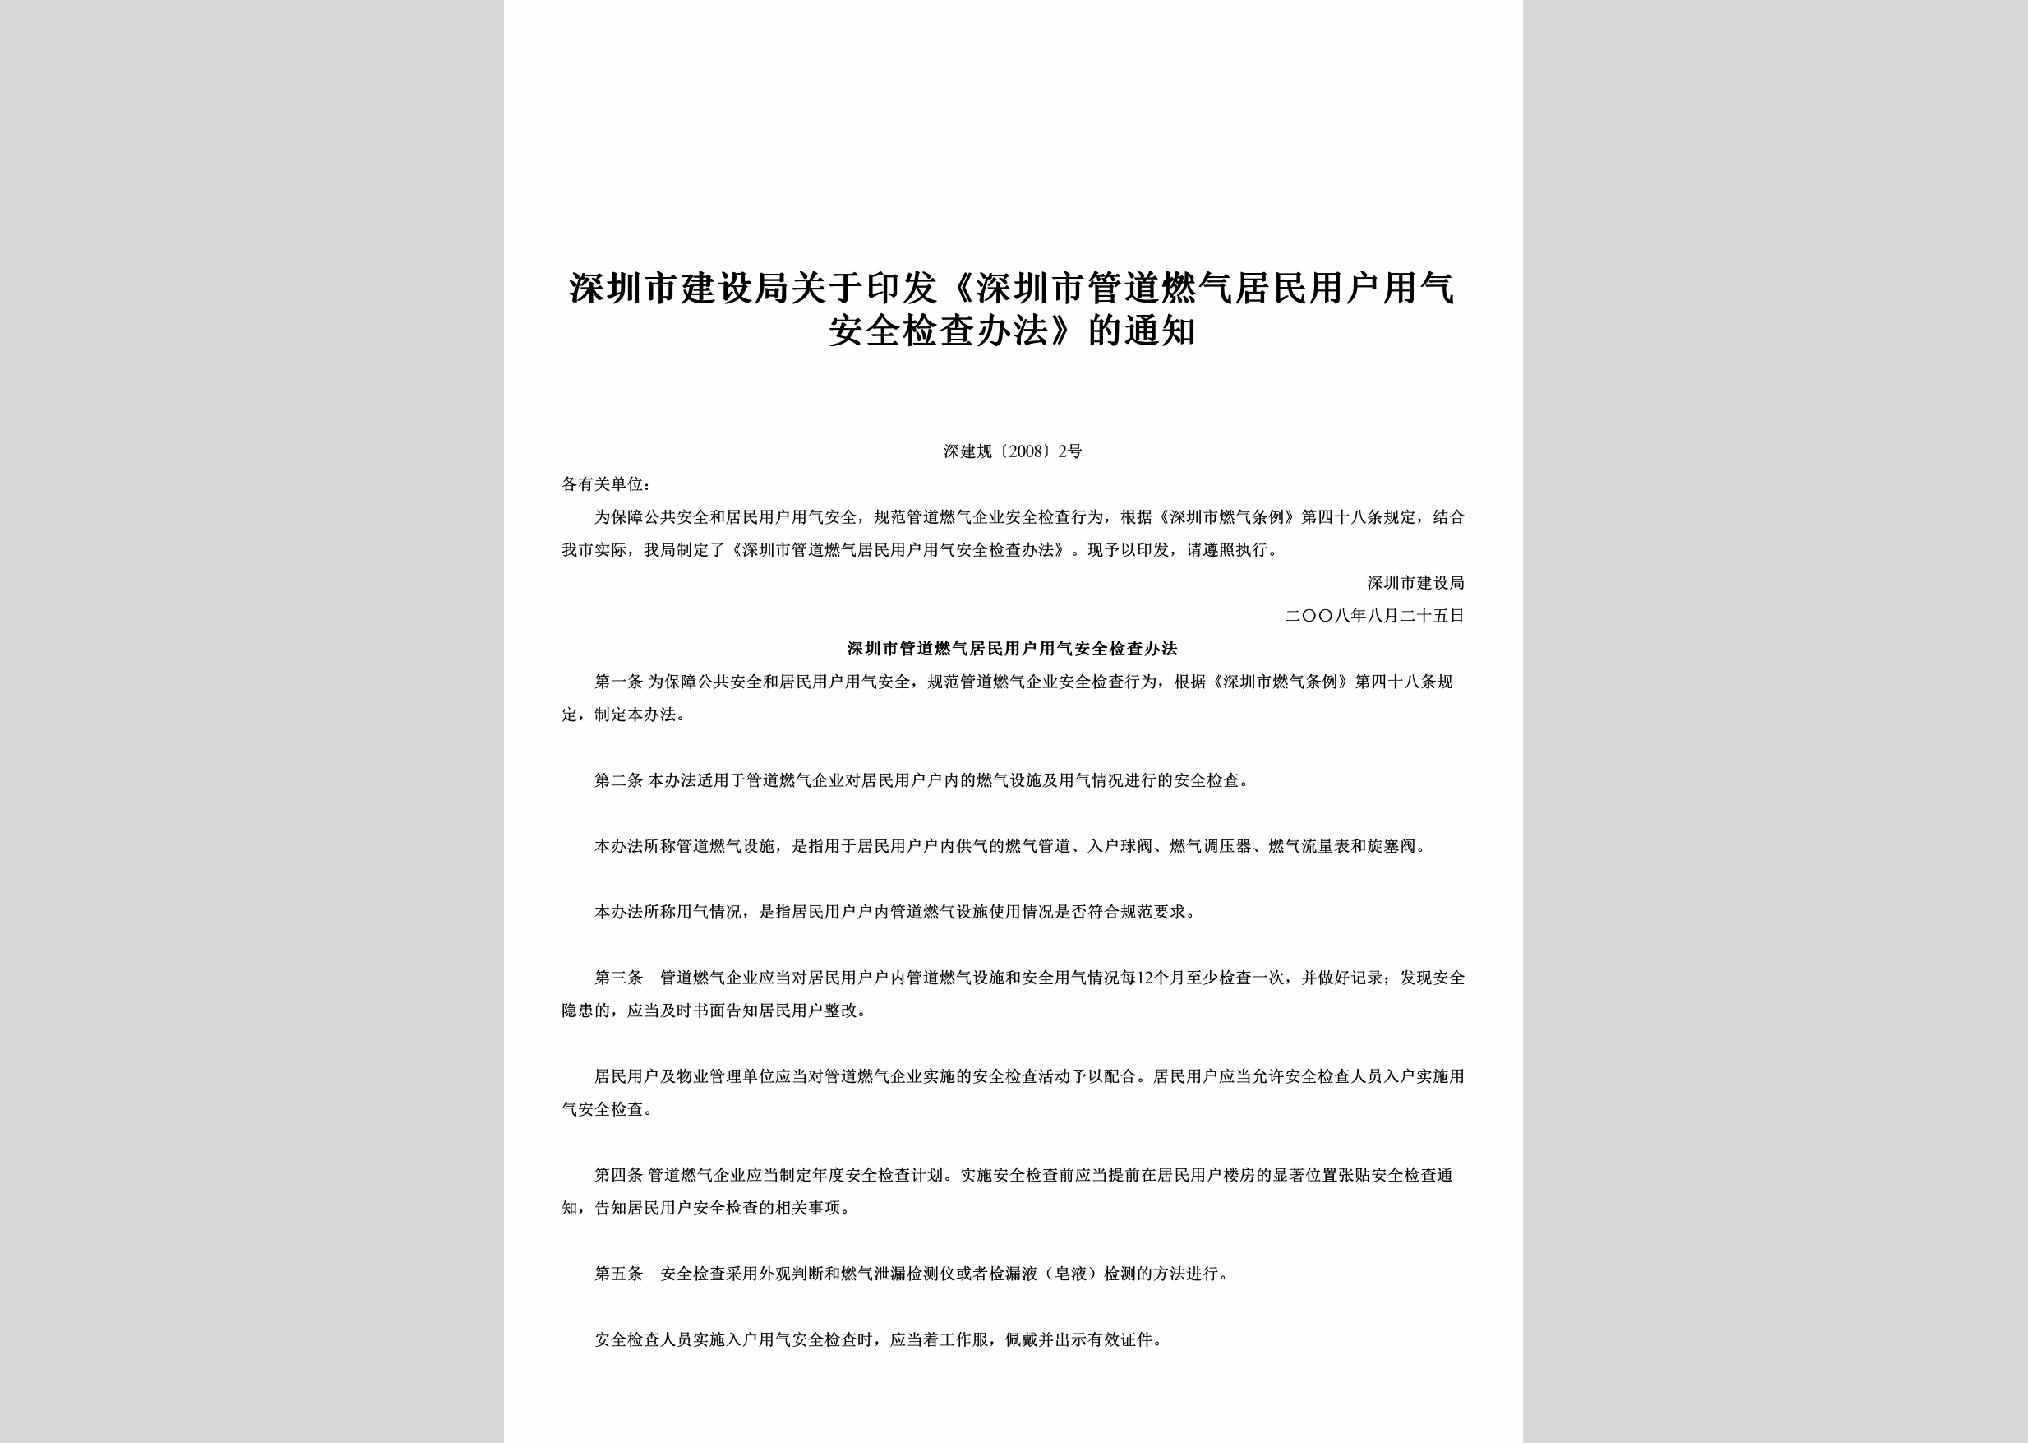 深建规[2008]2号：关于印发《深圳市管道燃气居民用户用气安全检查办法》的通知